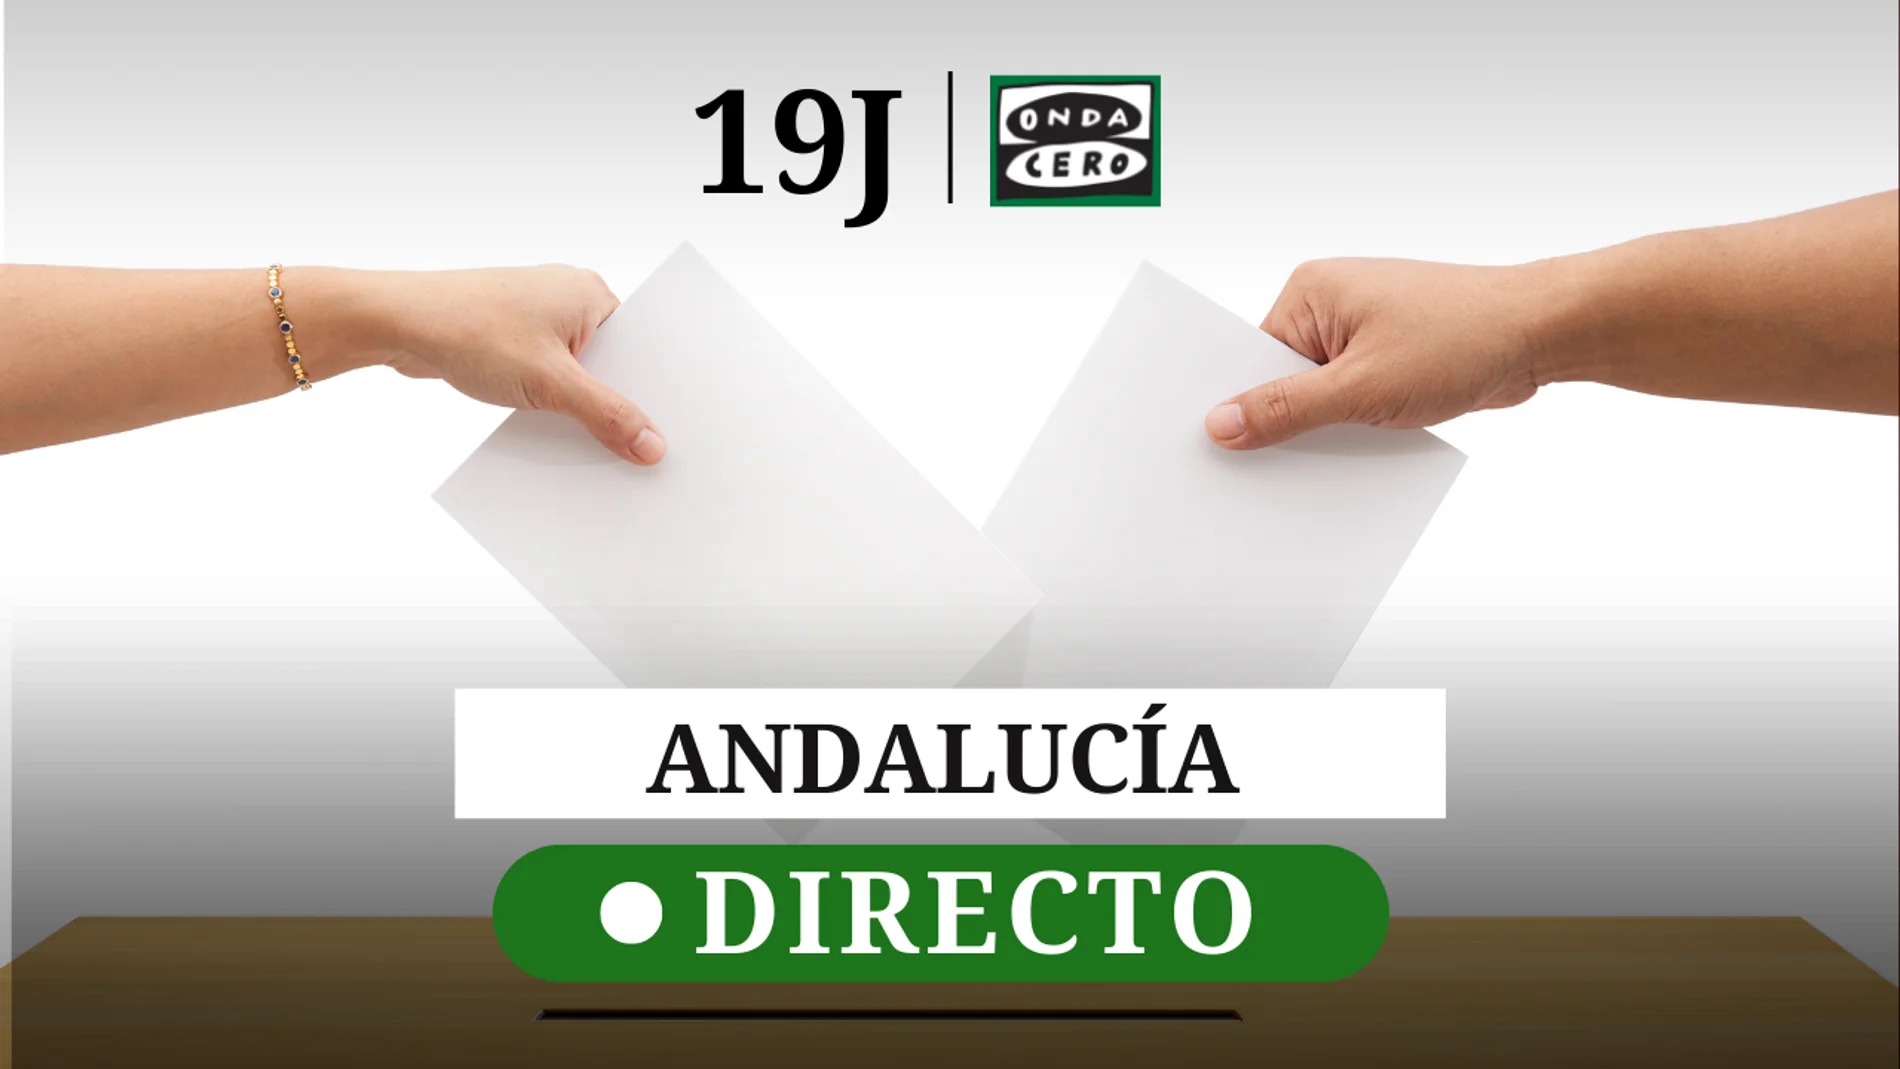 Resultado elecciones Andalucía 2022